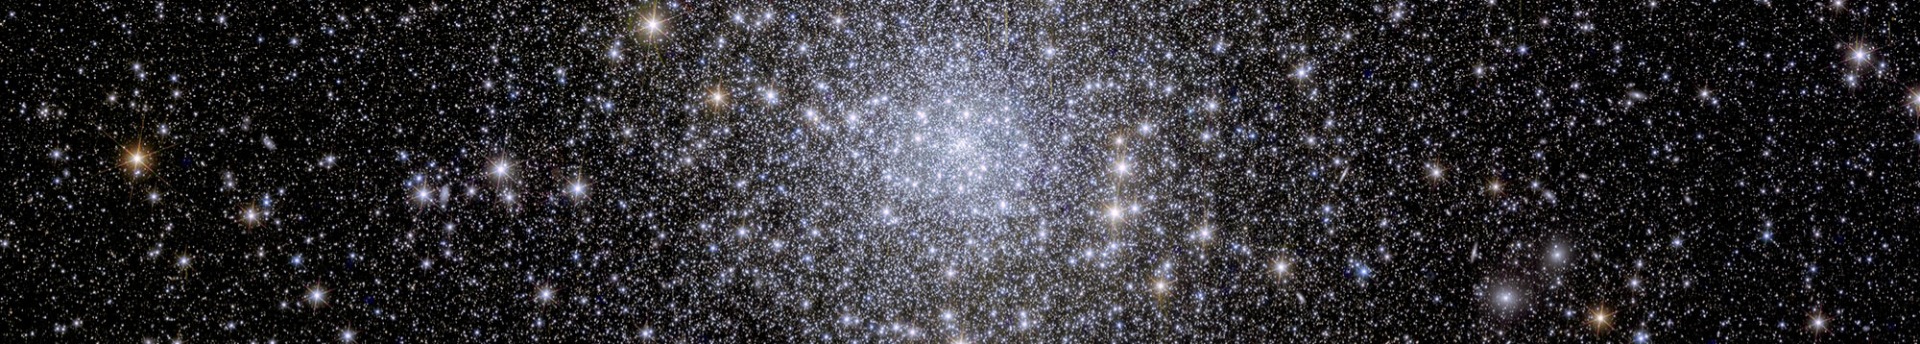 Ragyogó galaxisok a sötétség peremén: végre itt vannak a Euclid űrteleszkóp első képei